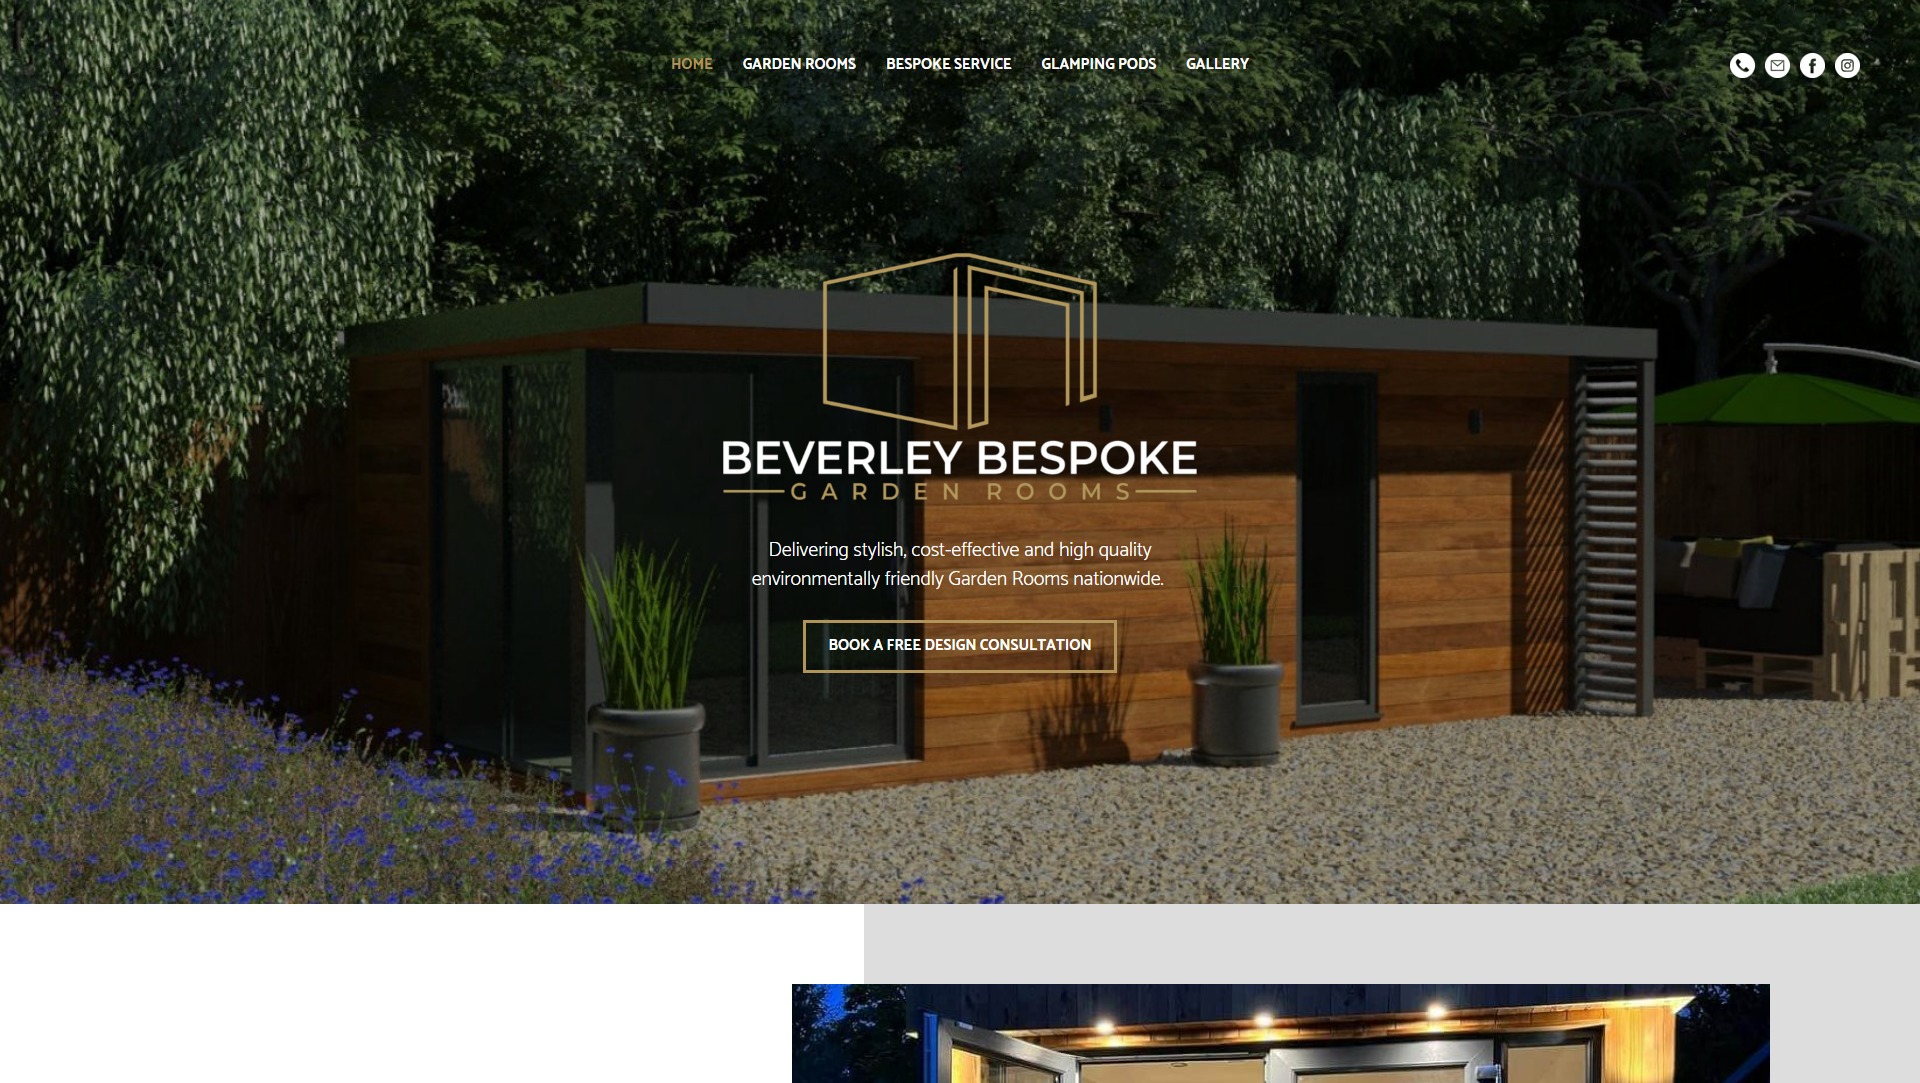 Beverley Bespoke Garden Rooms website design